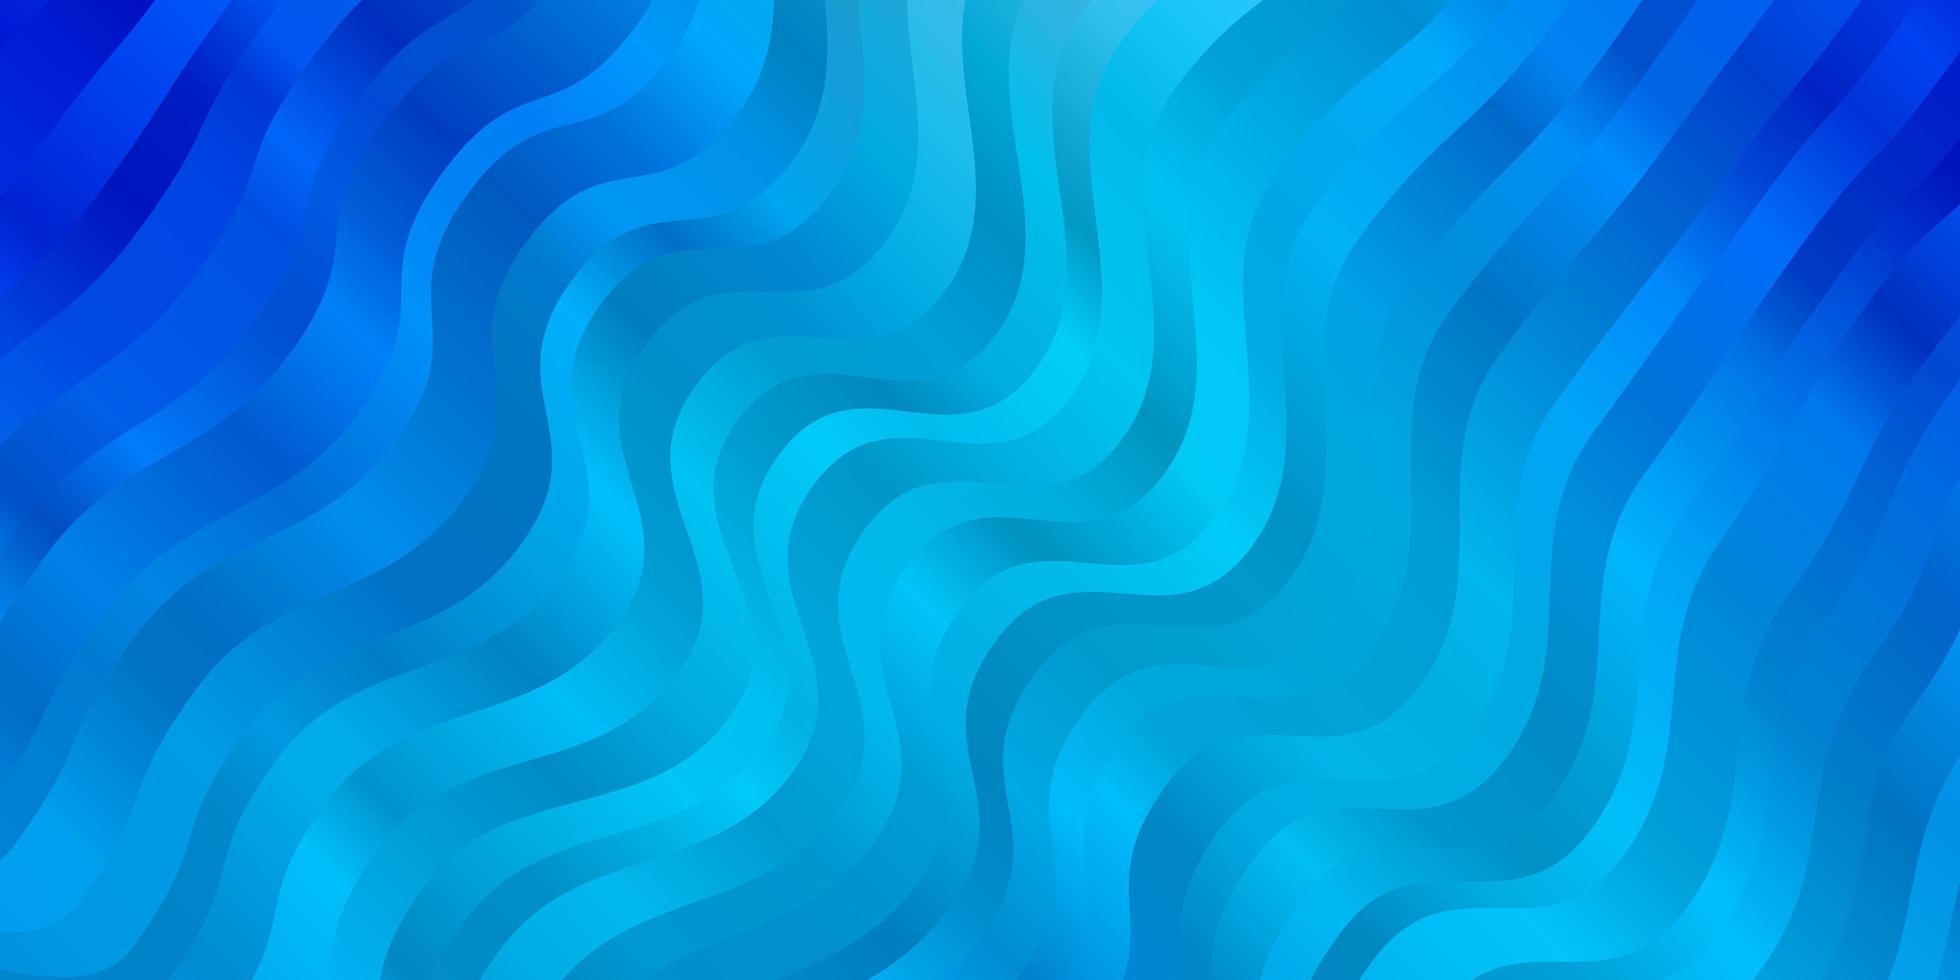 sfondo vettoriale azzurro con curve. illustrazione in stile mezzitoni con curve sfumate. modello per cellulari.